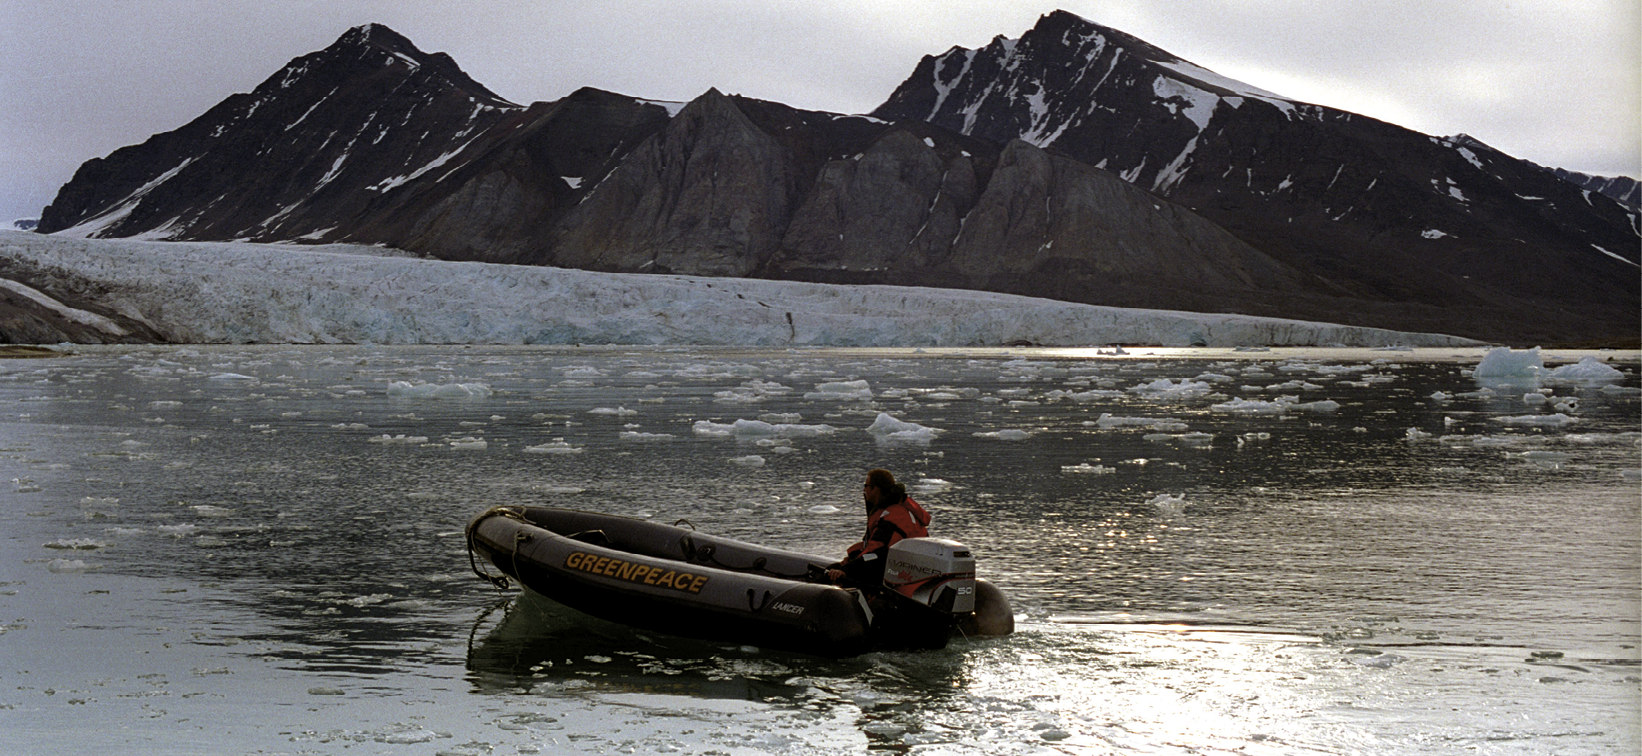 Fotografia. 
Uma pessoa dentro de um bote motorizado, em águas calmas, navegando  em direção a uma geleira baixa, ao fundo. Atrás da geleira, montes rochosos cobertos com pouca neve em algumas partes sob  céu nublado. Nas proximidades da geleira, pedaços de gelo flutuam sobre as águas.